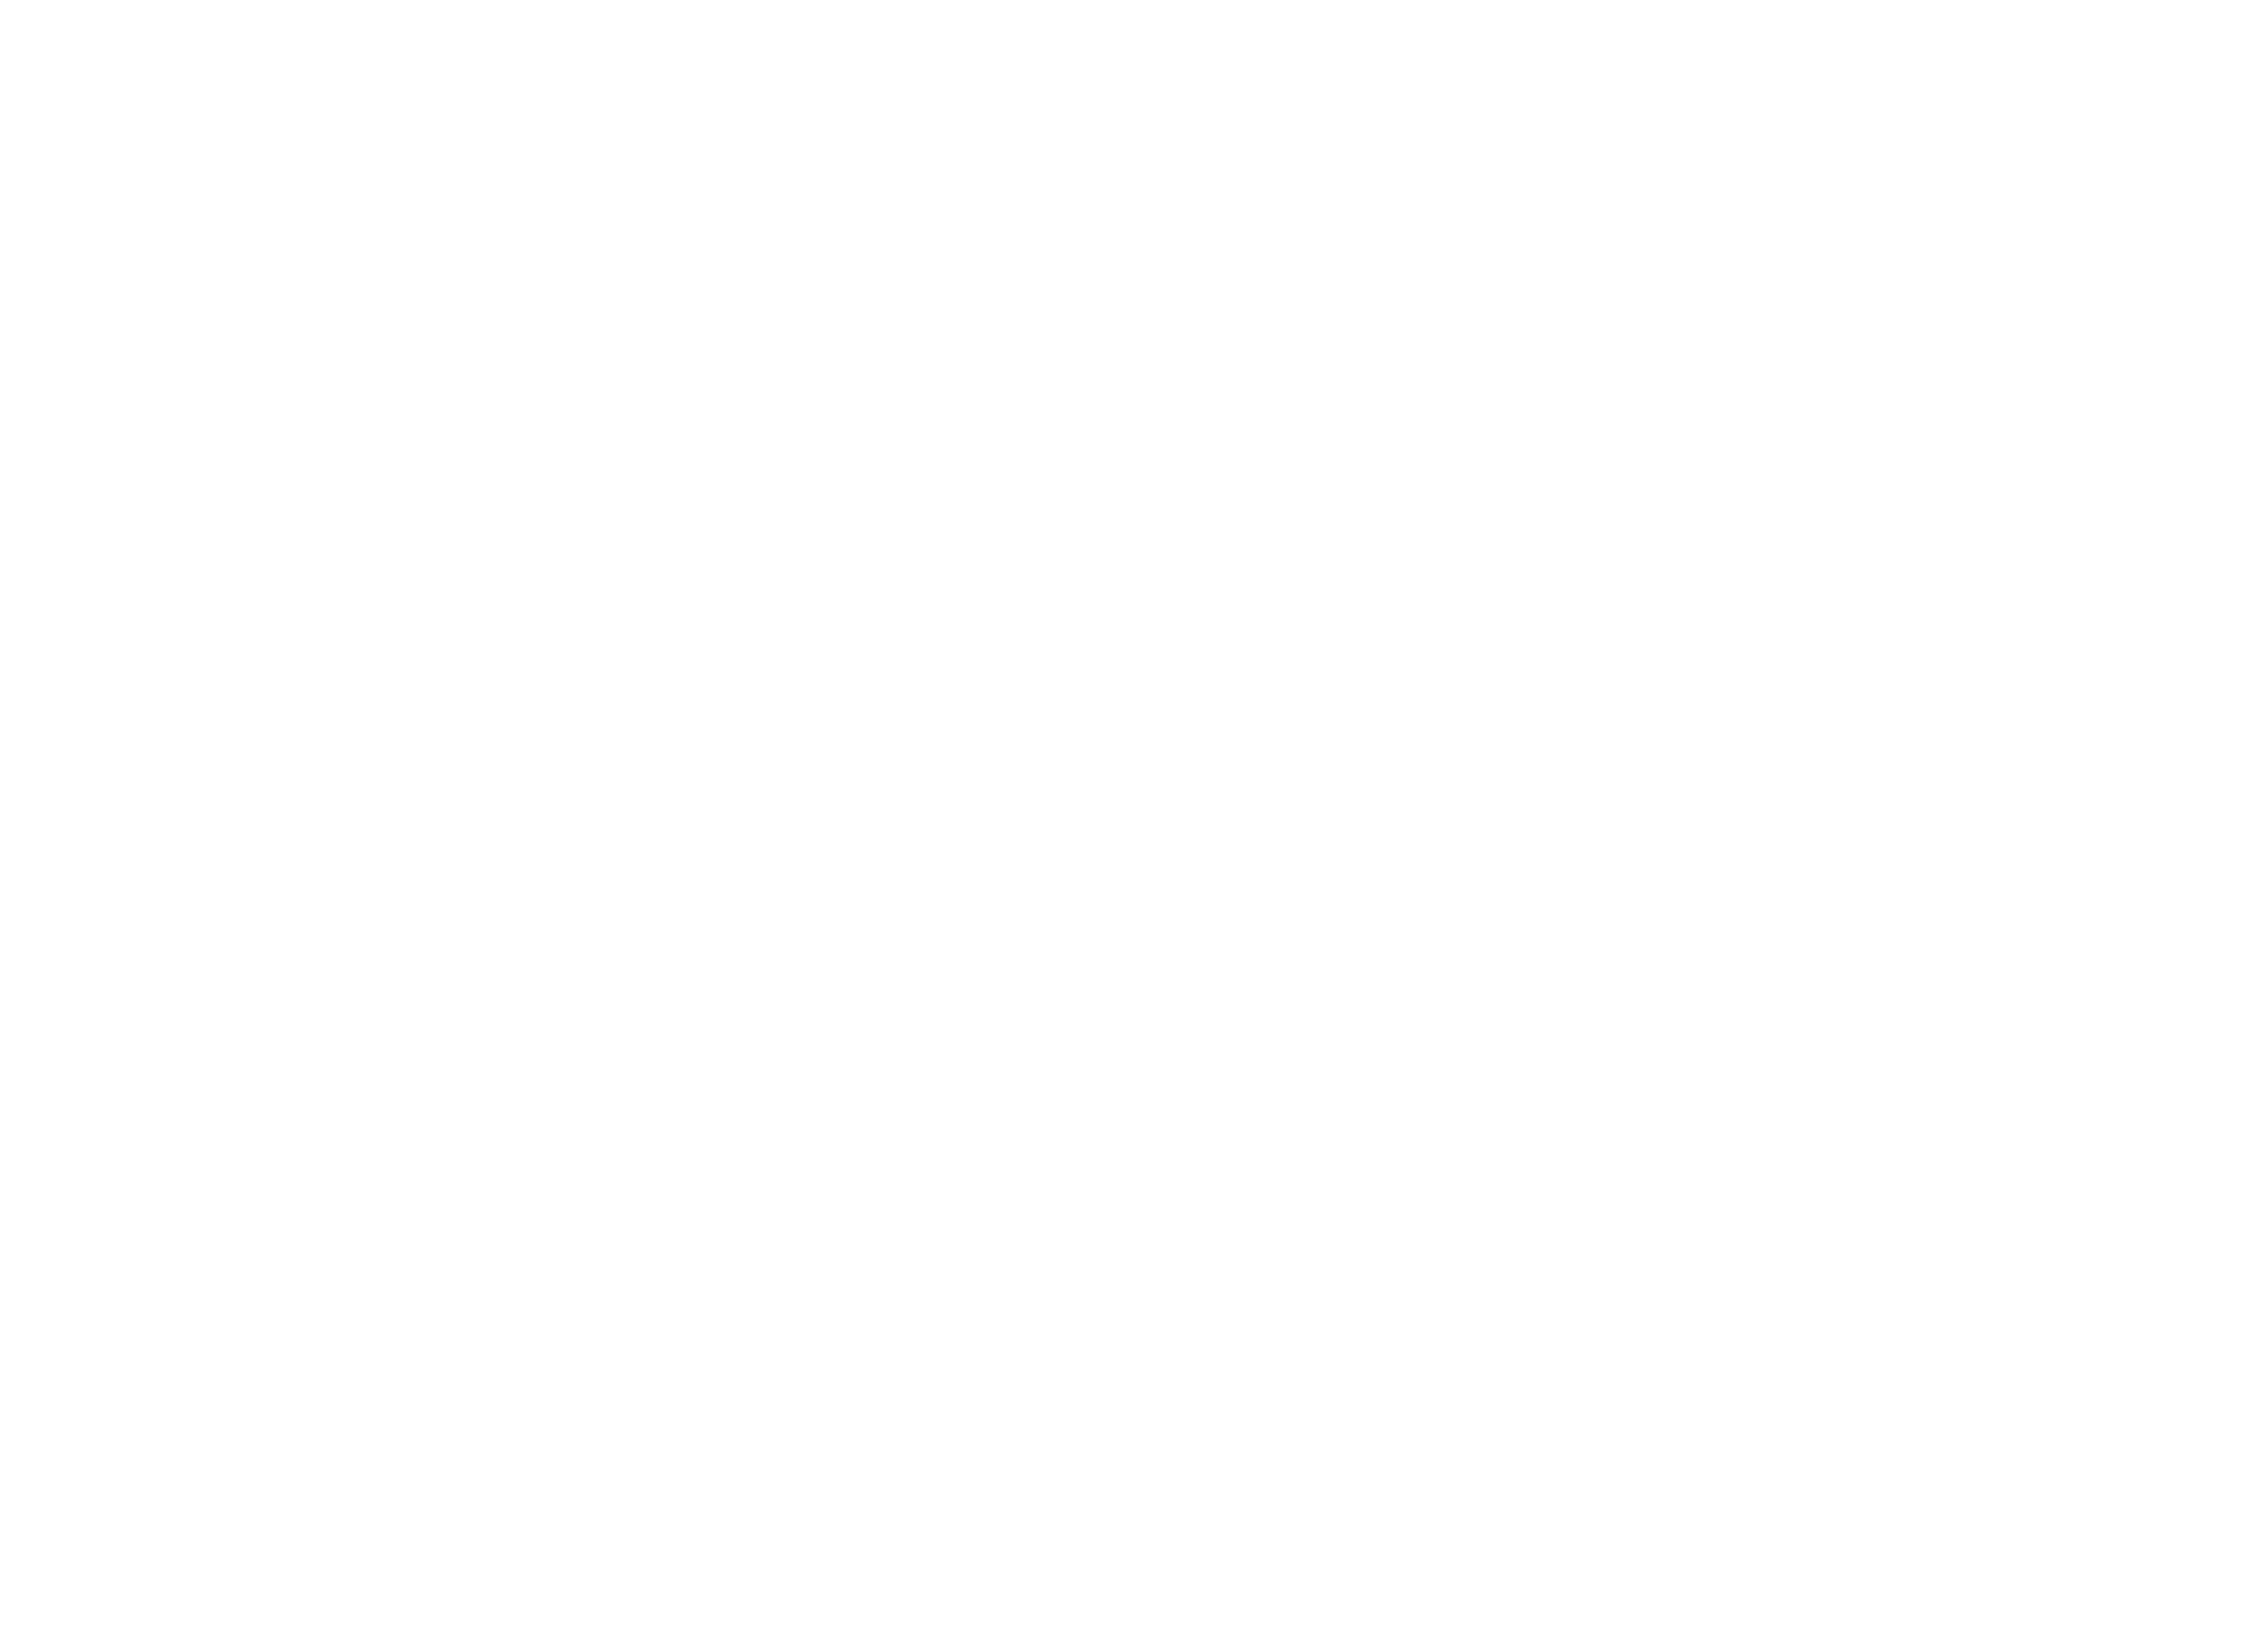 X Aviation